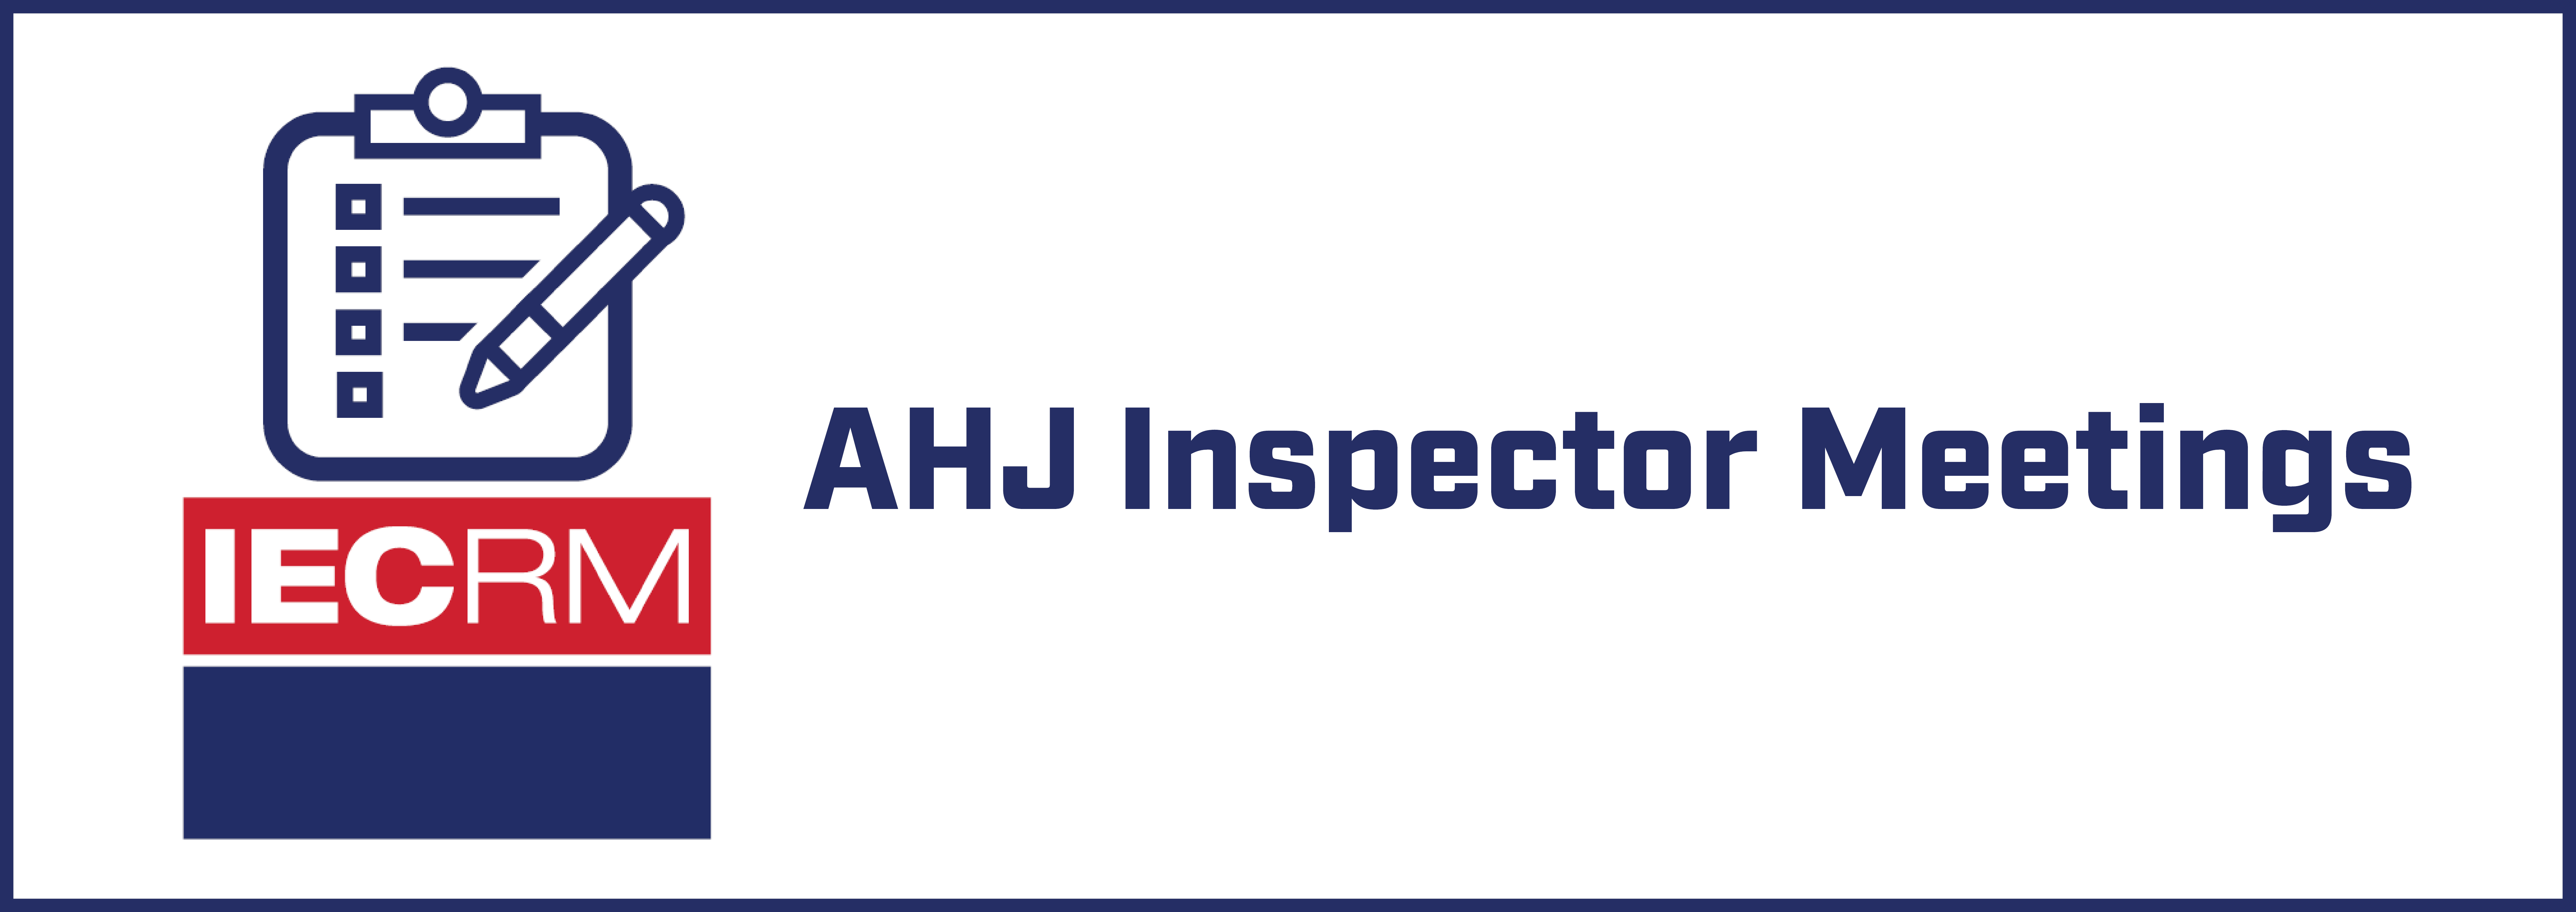 IECRM AHJ Inspectors Meeting - July 2022